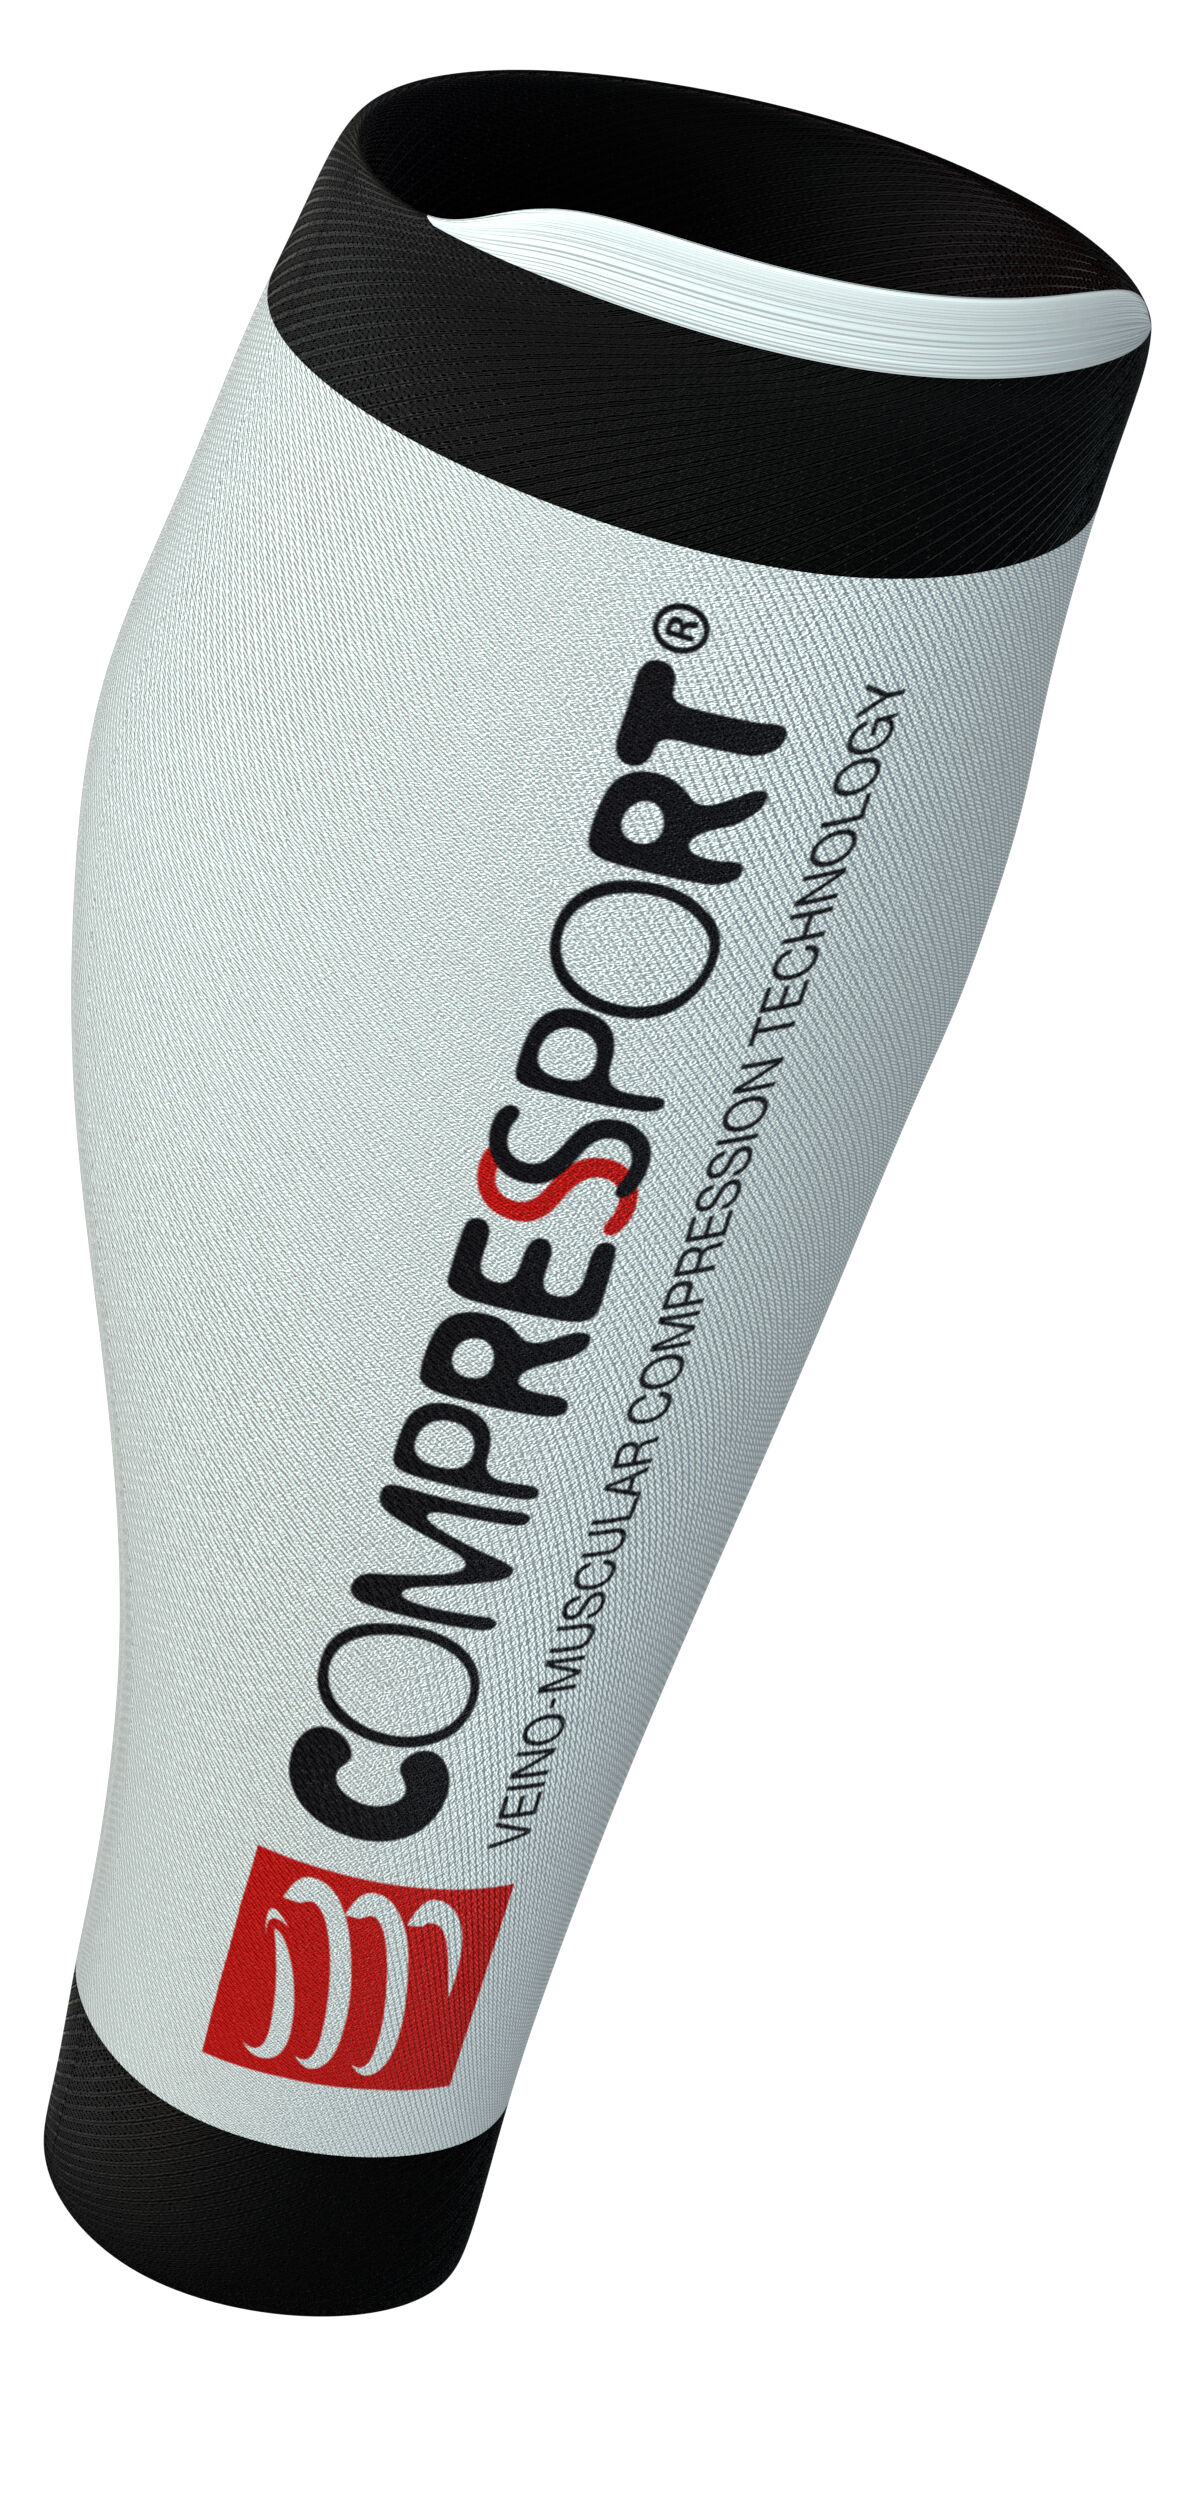 Compressport - R2 v2 - Calze a compressione